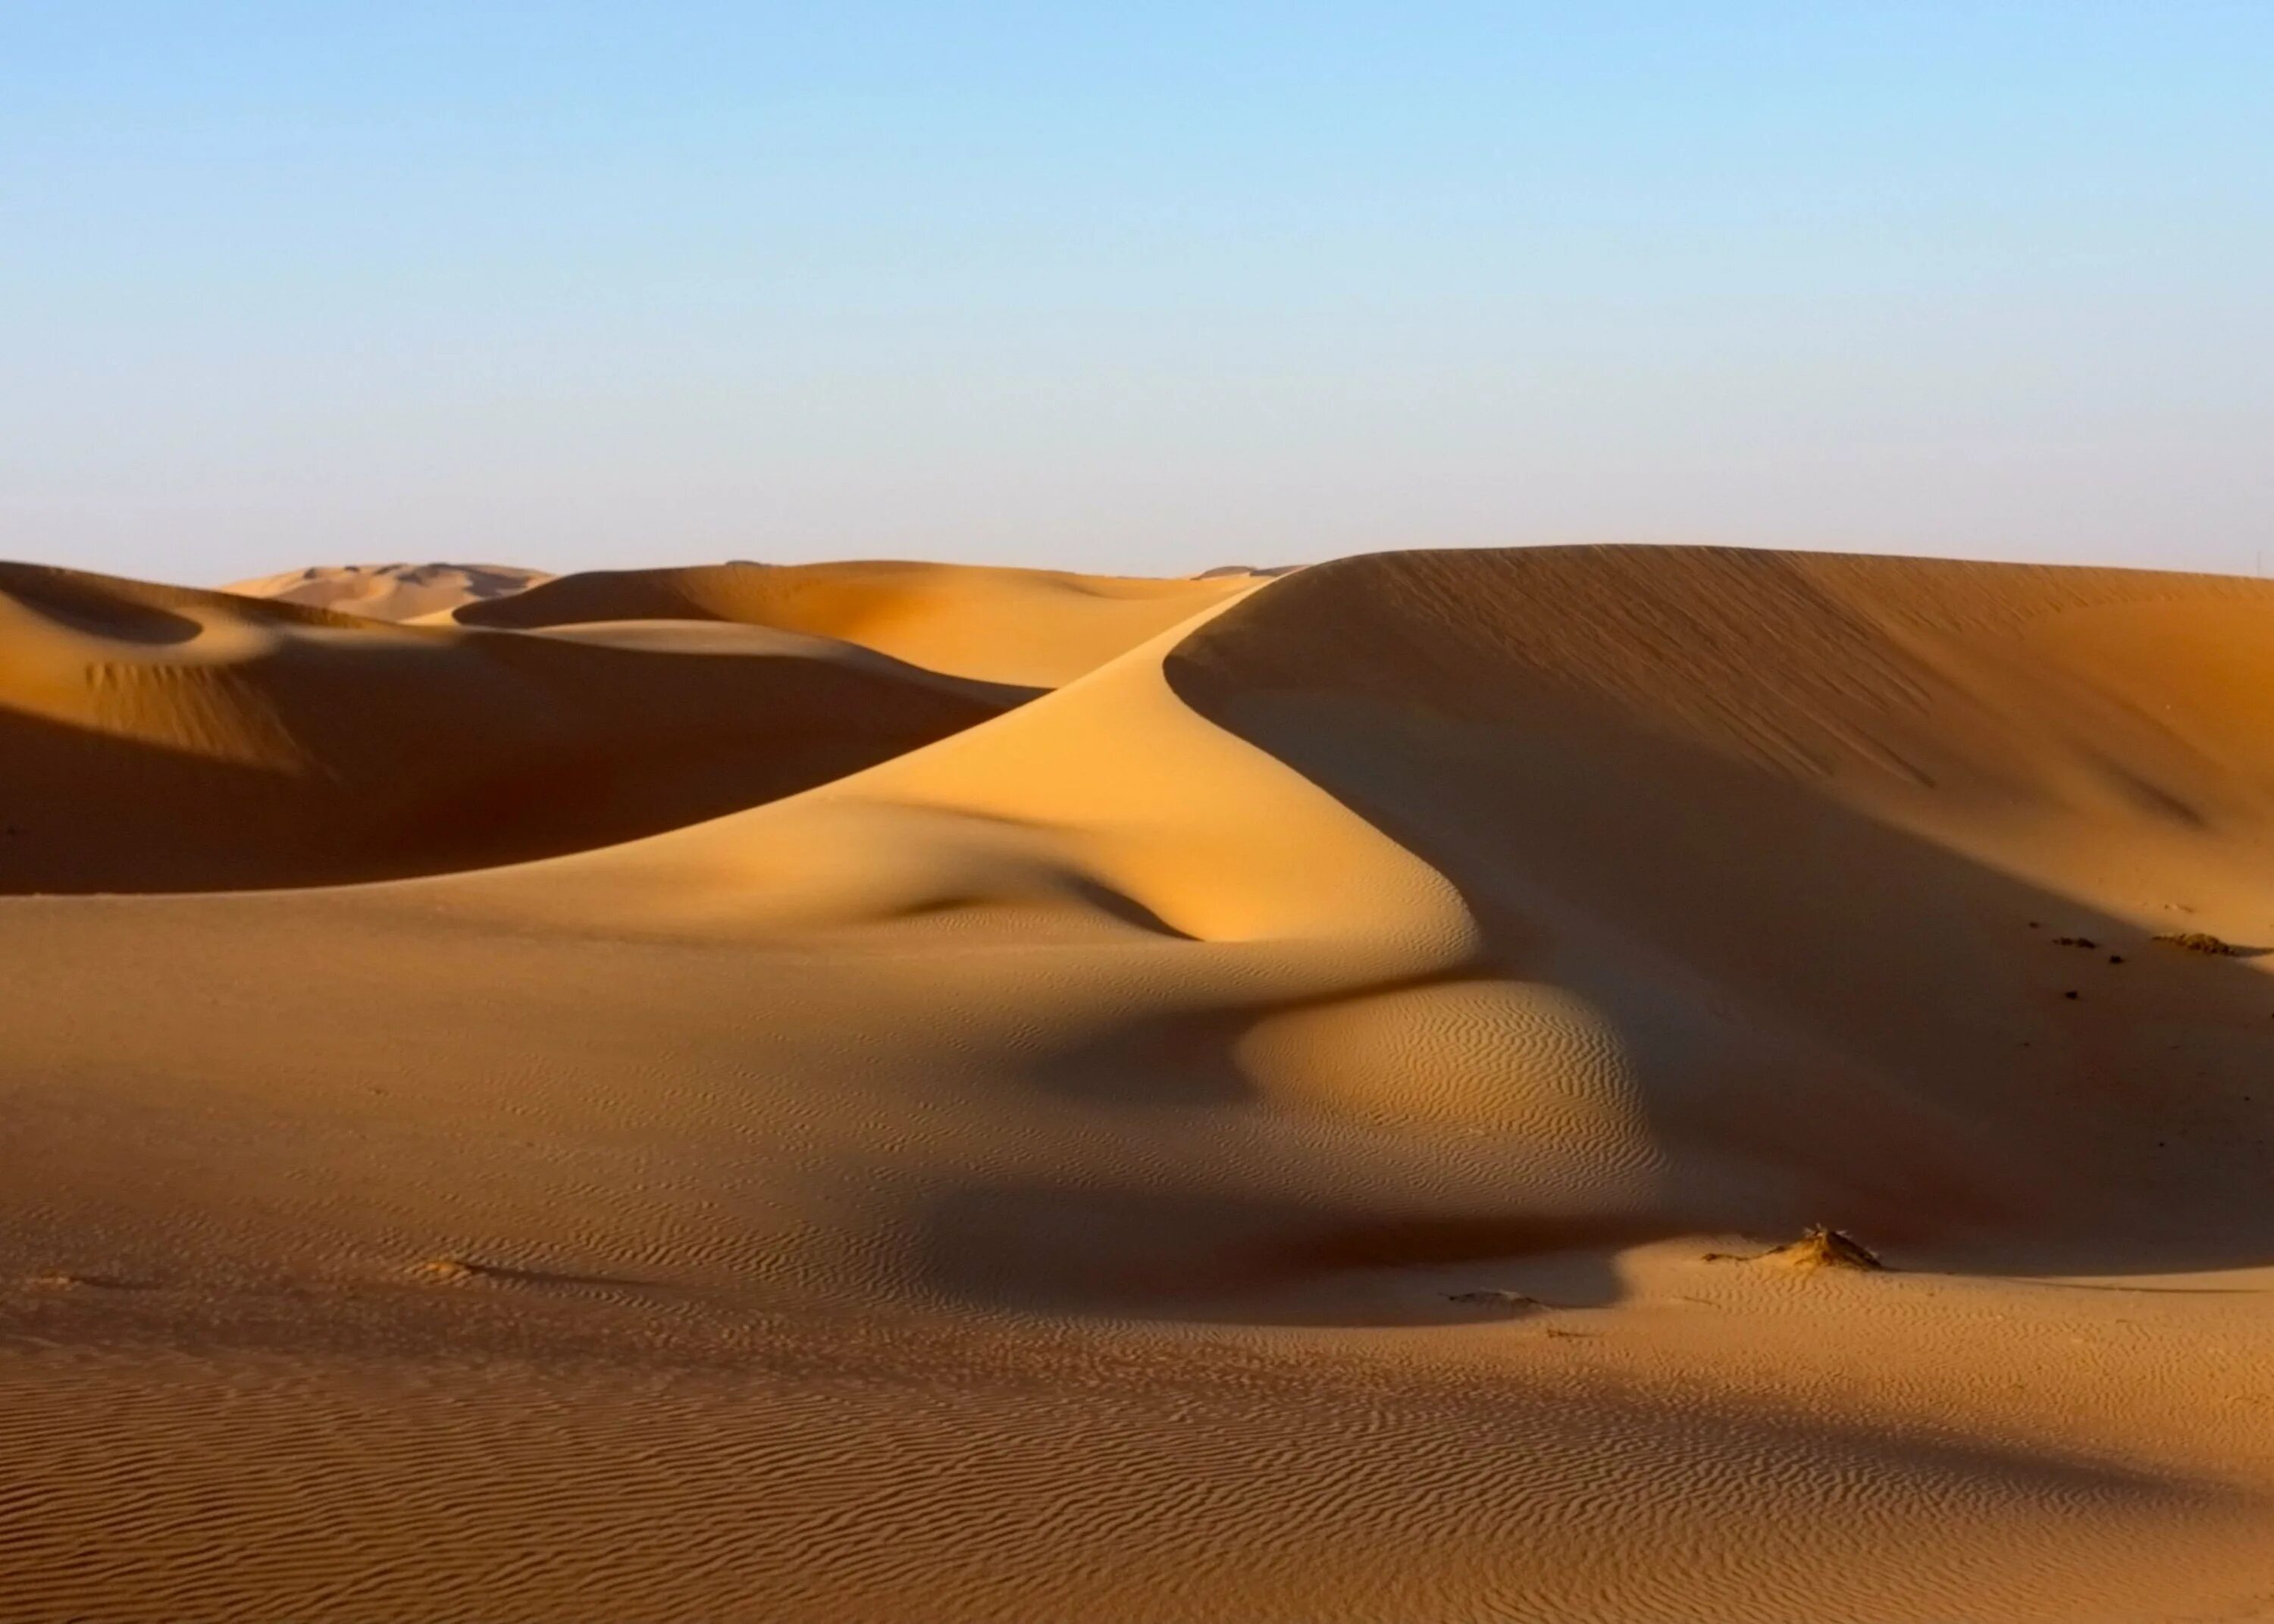 Барханы ханы. ОАЭ пустыня руб-Эль-Хали. Бухара пустыня Кызылкум. Пустыня Каракум Оазис. Йемен пустыня руб-Эль-Хали.